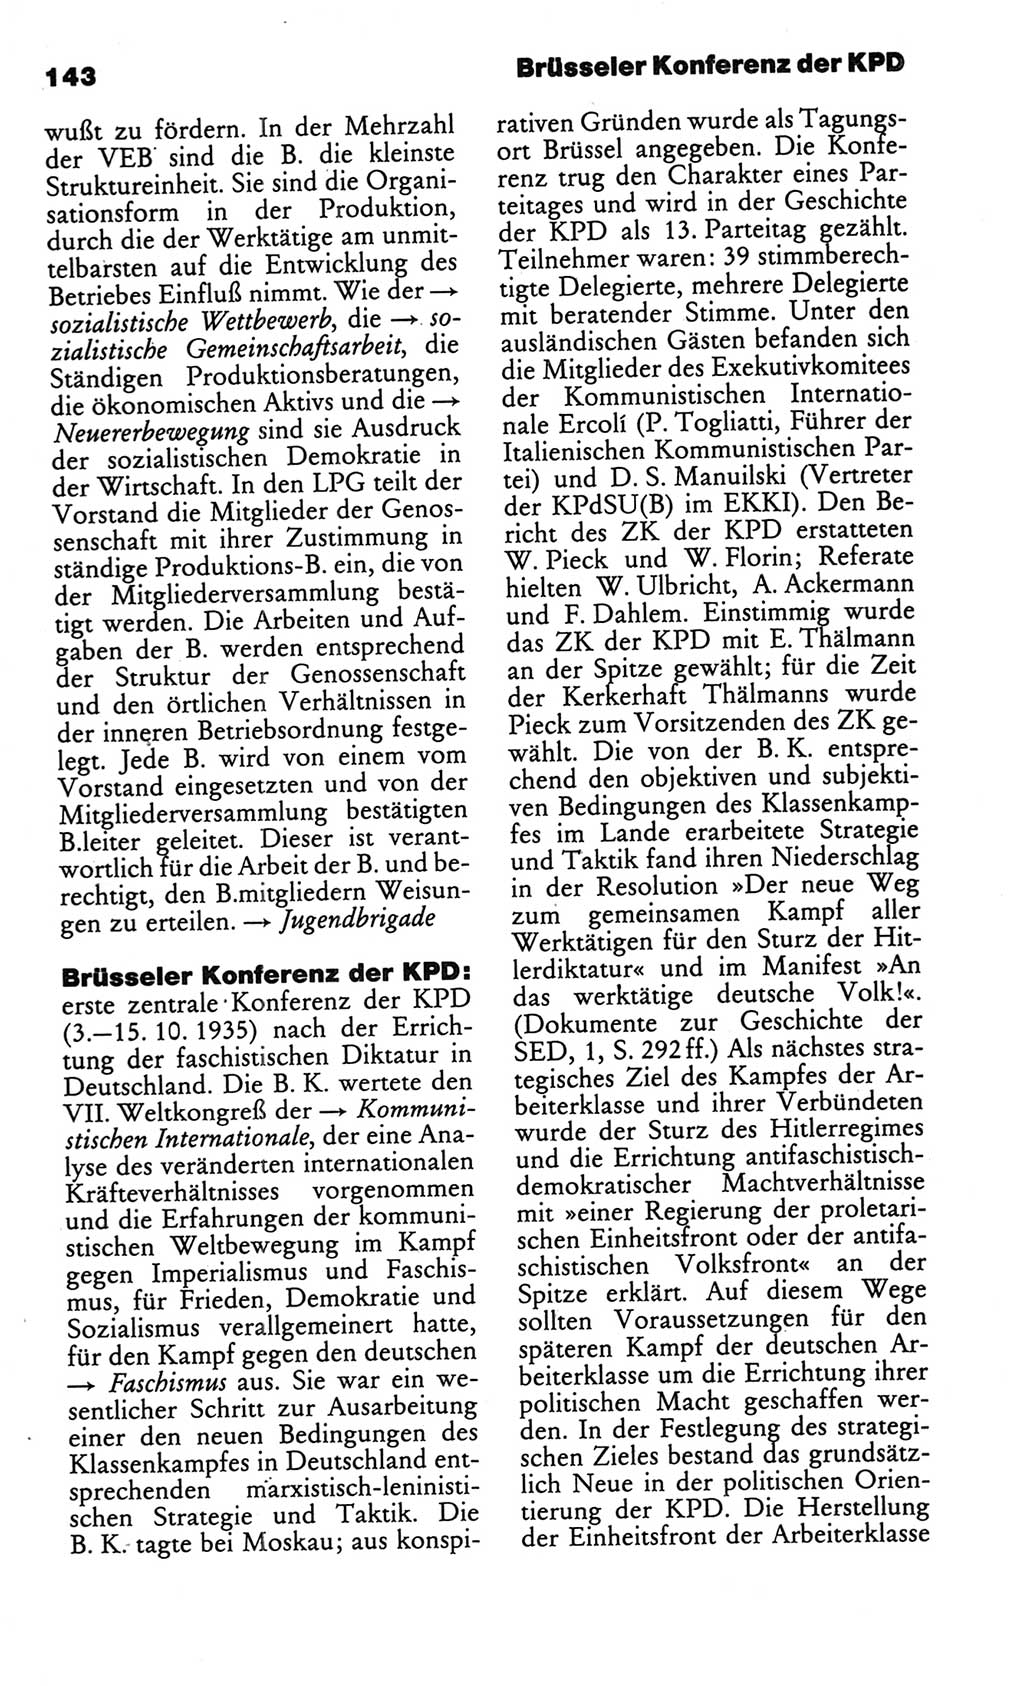 Kleines politisches Wörterbuch [Deutsche Demokratische Republik (DDR)] 1986, Seite 143 (Kl. pol. Wb. DDR 1986, S. 143)